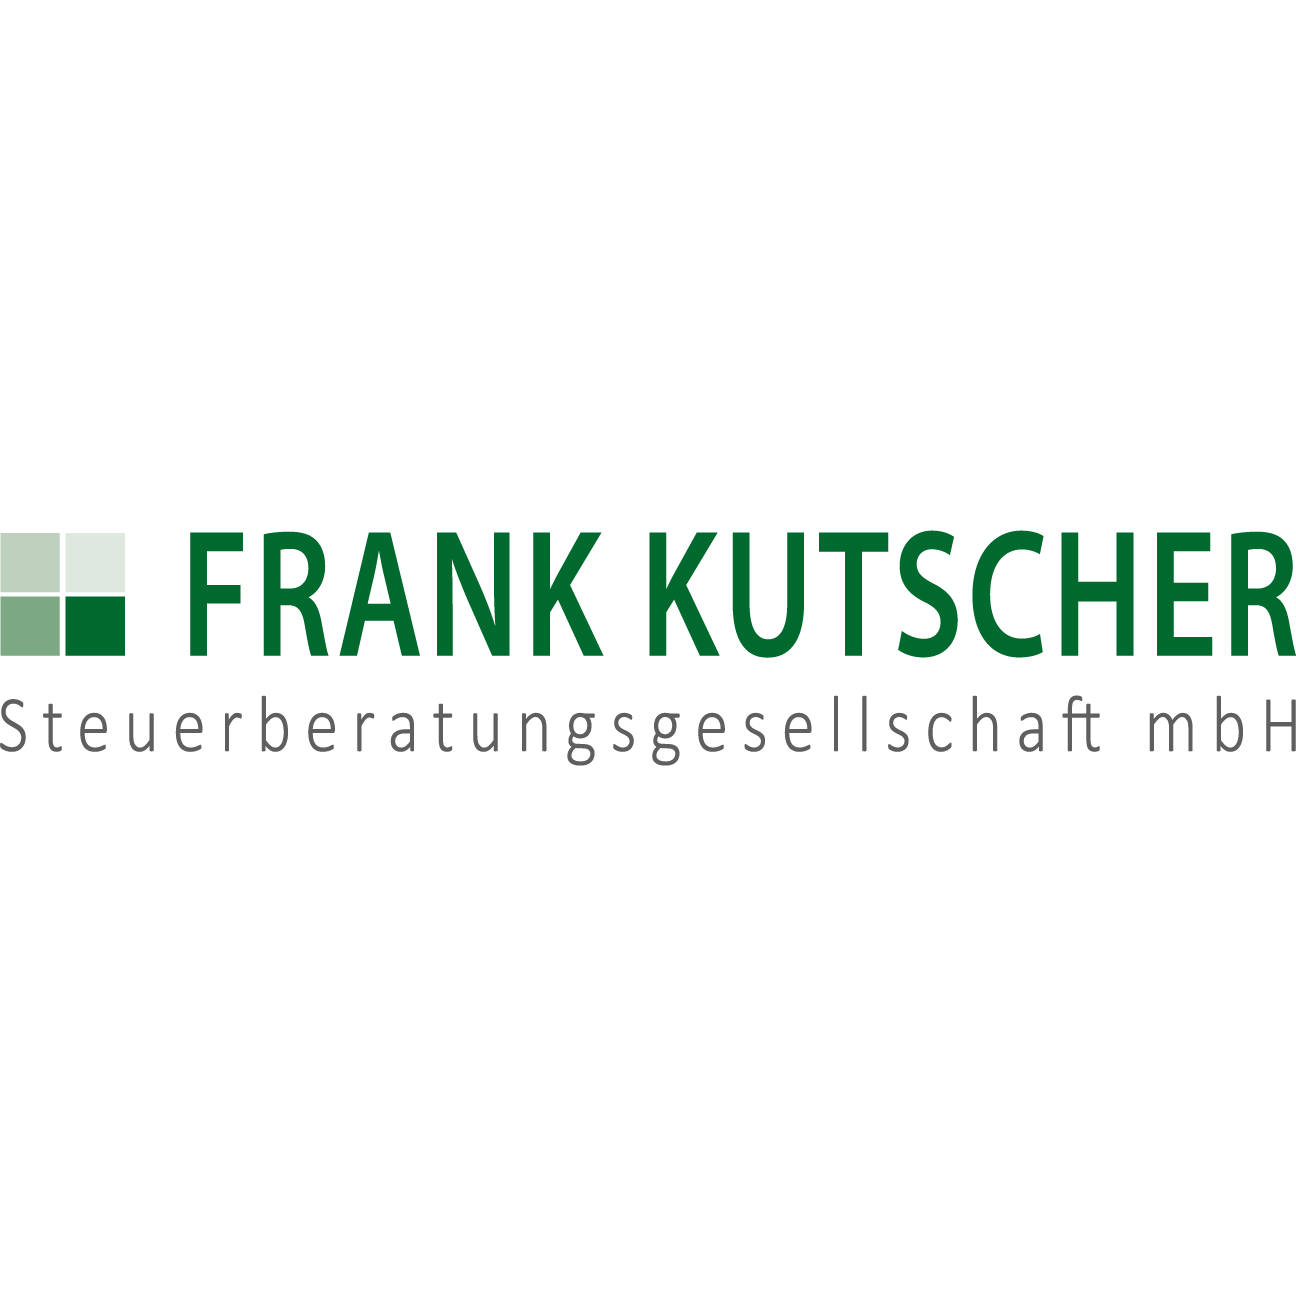 Frank Kutscher, Steuerberatungsgesellschaft mbH Logo